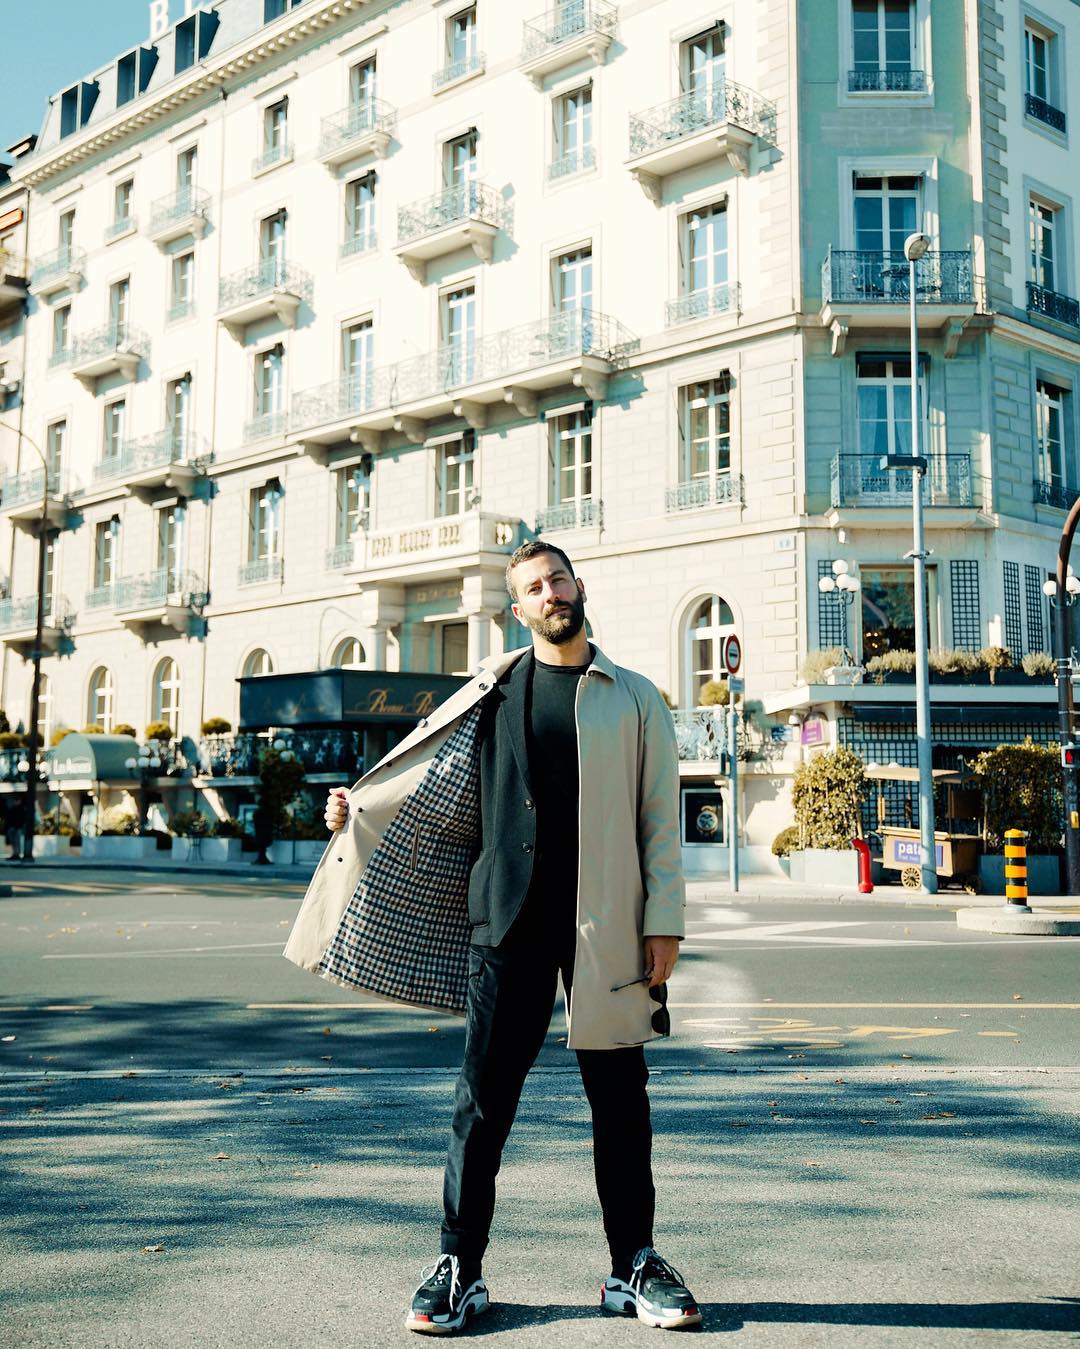 Chàng fashionisto Matthew Zorpas lần đầu xuất hiện trong danh sách thời trang sao nam ấn tượng với sự kết hợp độc đáo giữa trench coat và sneaker, giữa văn hóa đường phố và sự thanh lịch thời thượng. Ảnh: Instagram @matthewzorpas